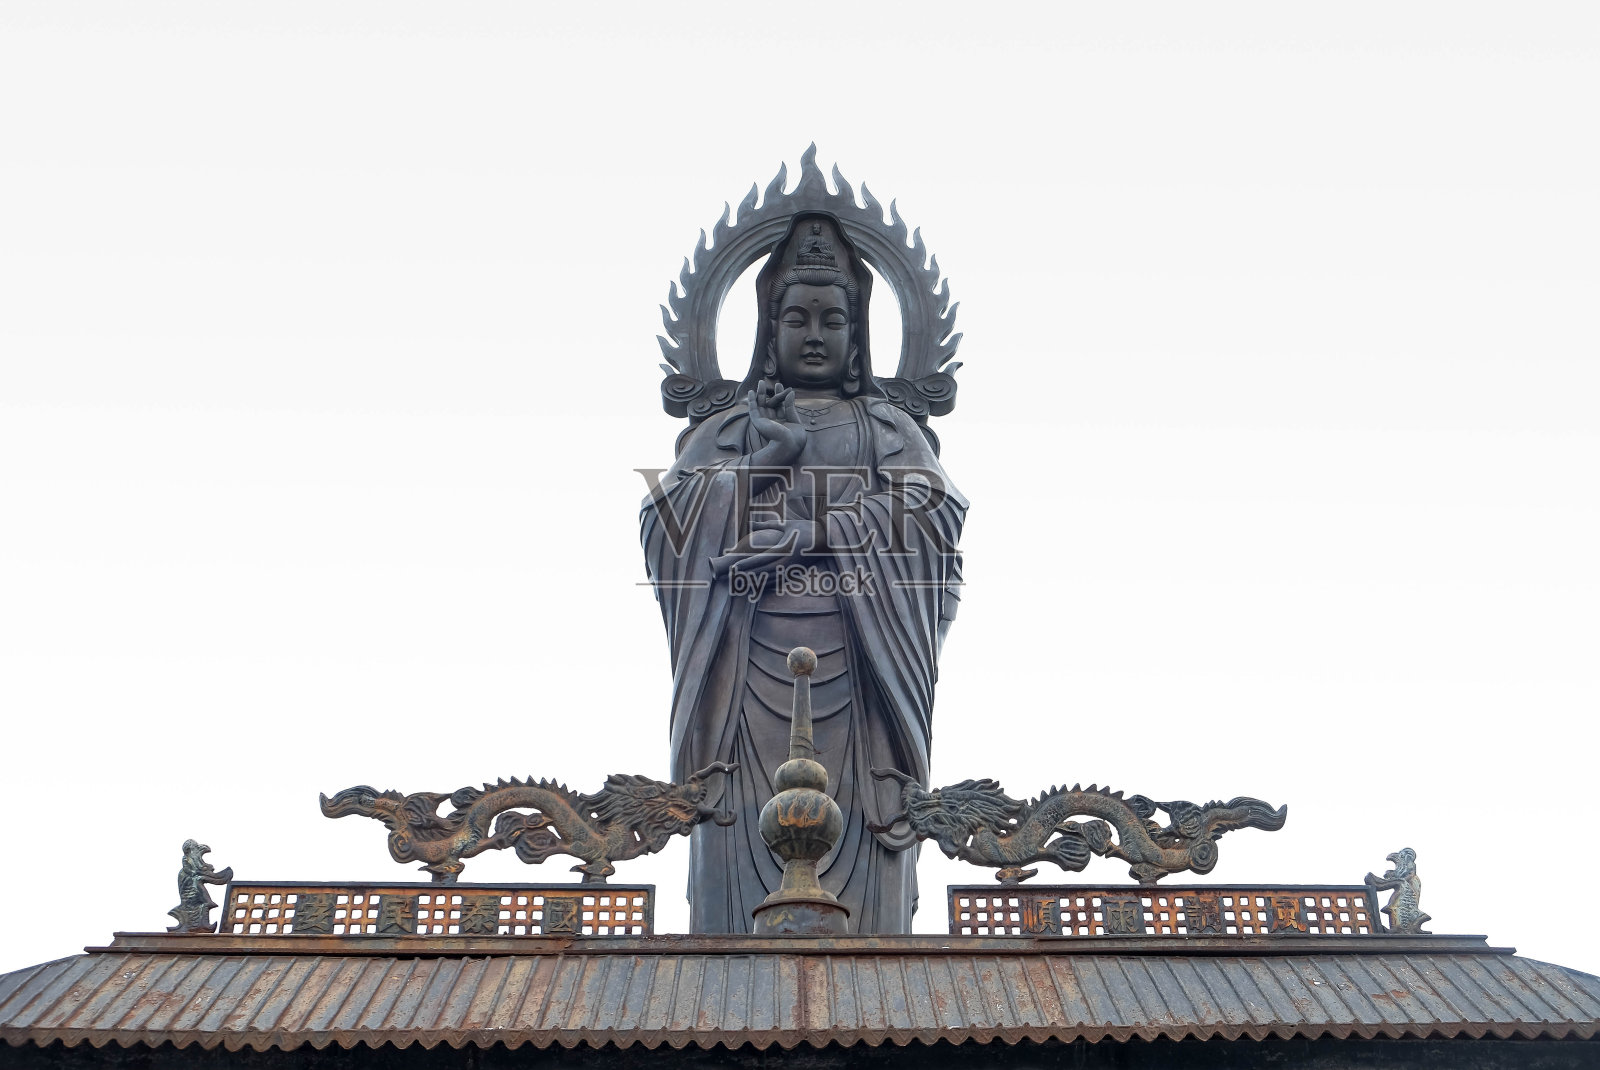 归元寺是位于湖北省武汉市的一座佛教寺院照片摄影图片